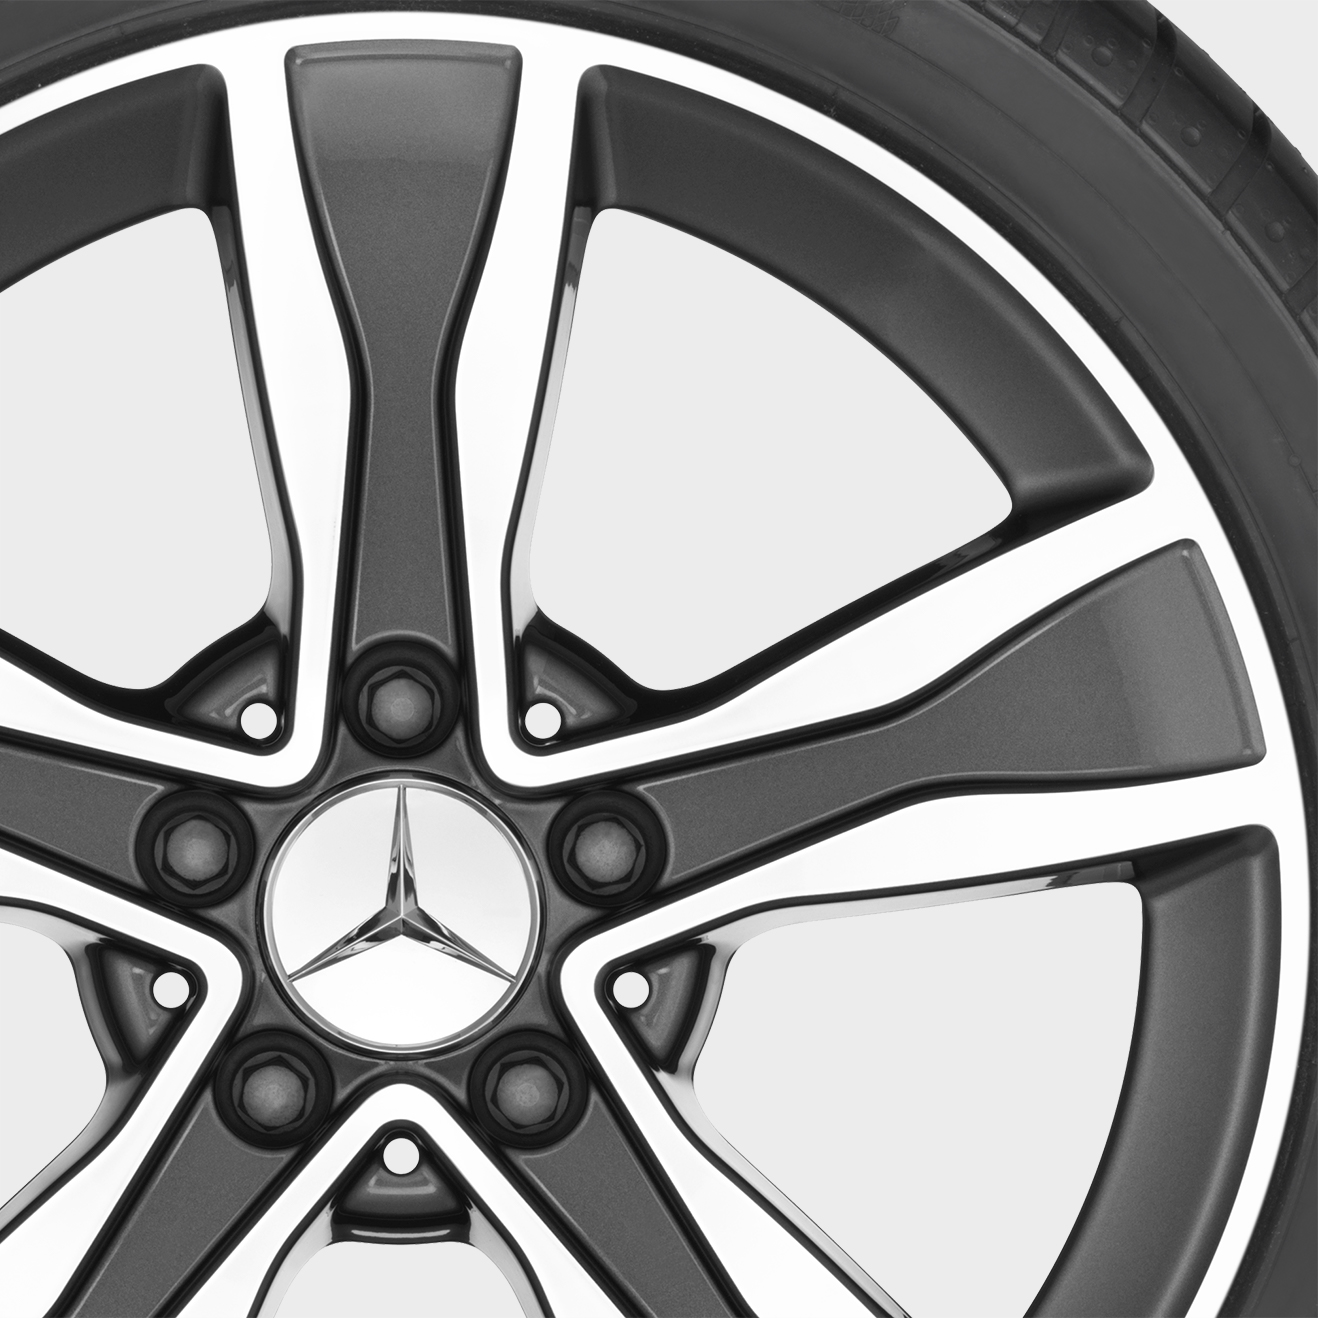 Mercedes-Benz Winterkomplettrad 5-Speichen, Tremolit-metallic glanzgedreht